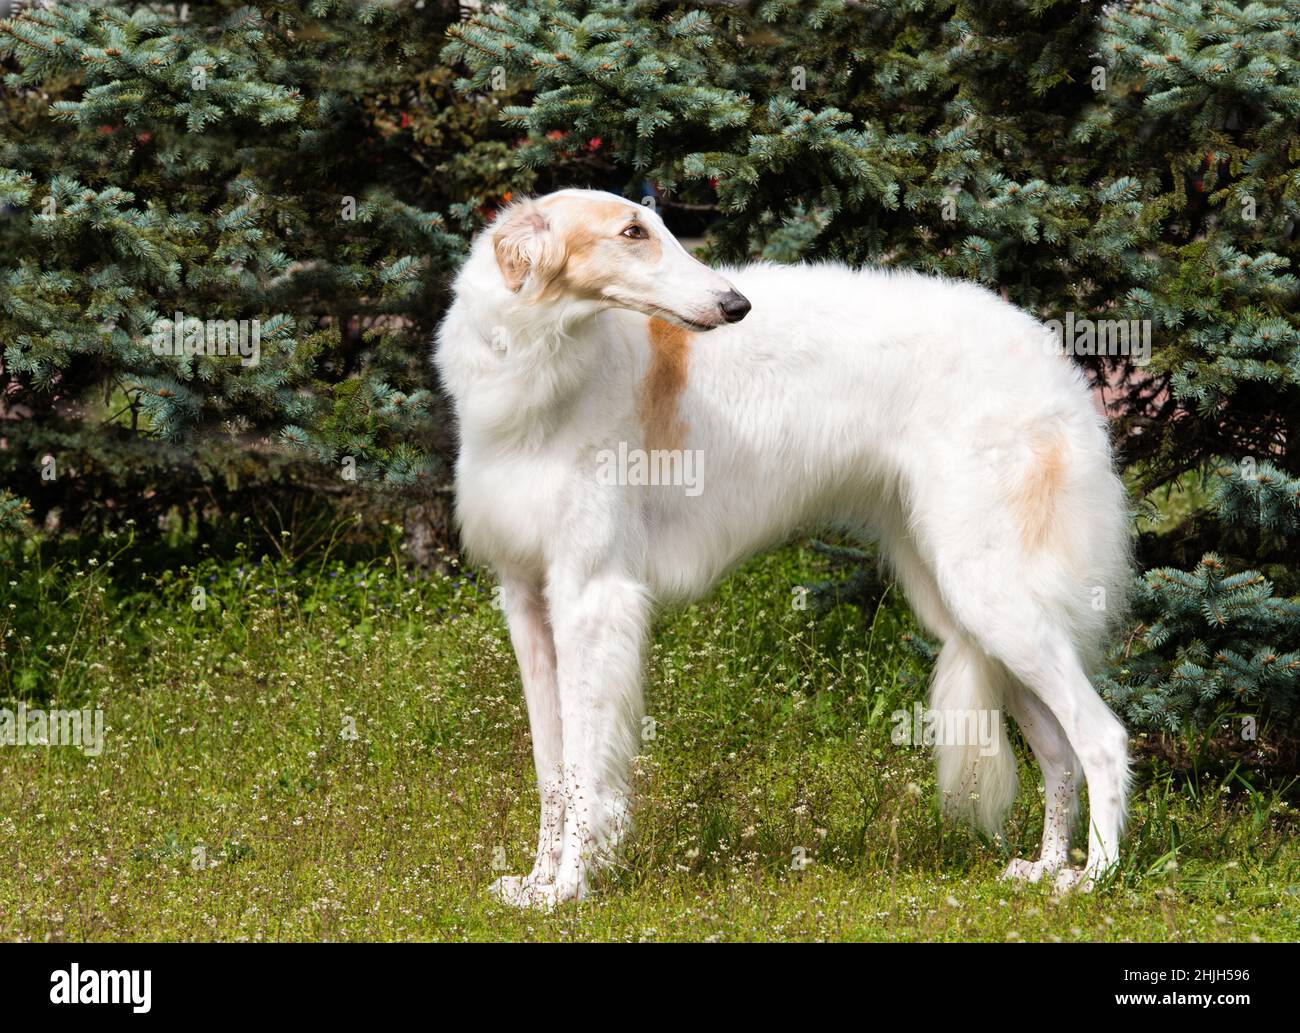 Barsoi-Russisch blickt zurück. Der russische Barsoi-Hund steht auf dem  grünen Gras Stockfotografie - Alamy